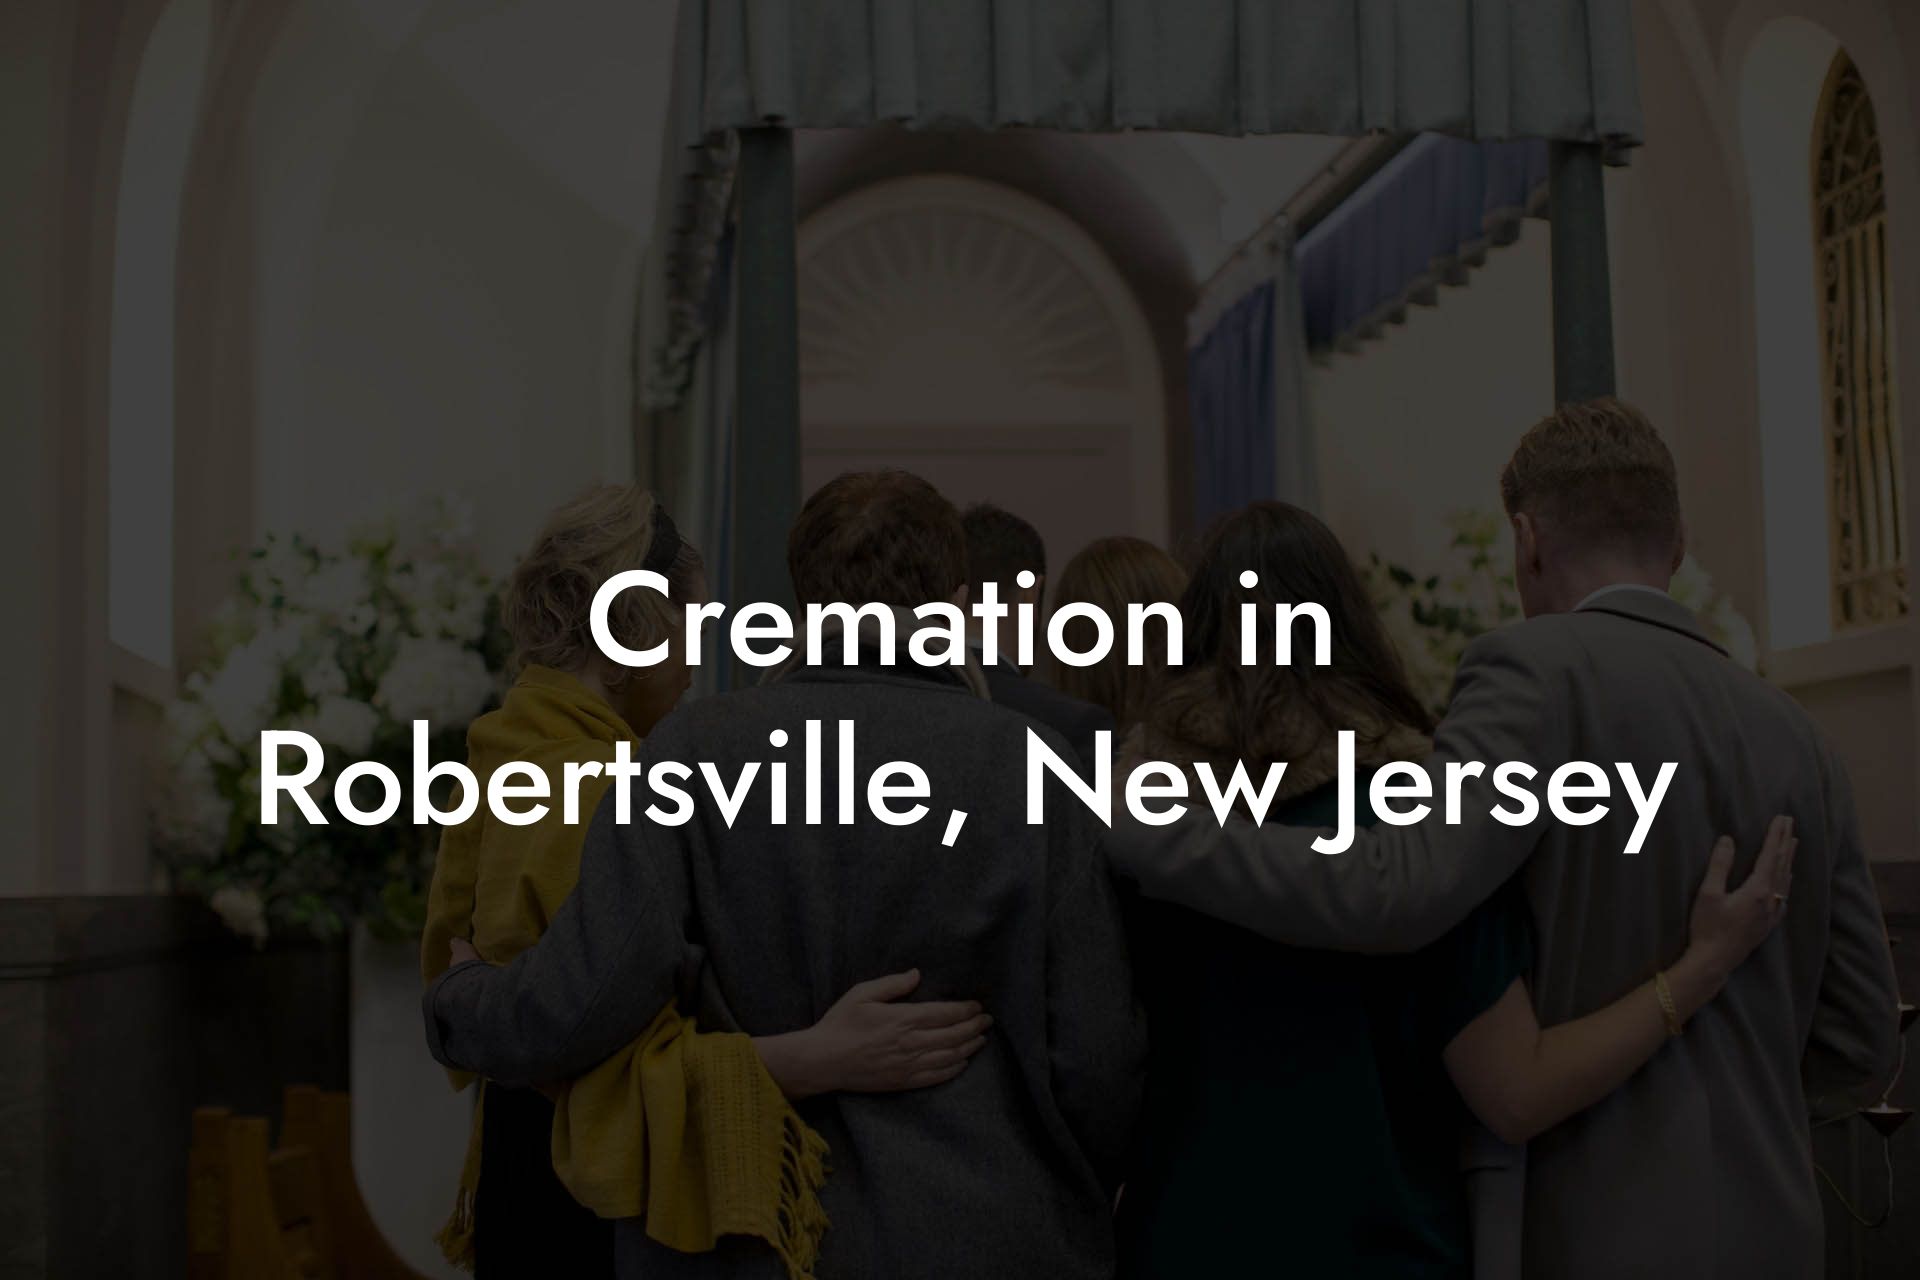 Cremation in Robertsville, New Jersey